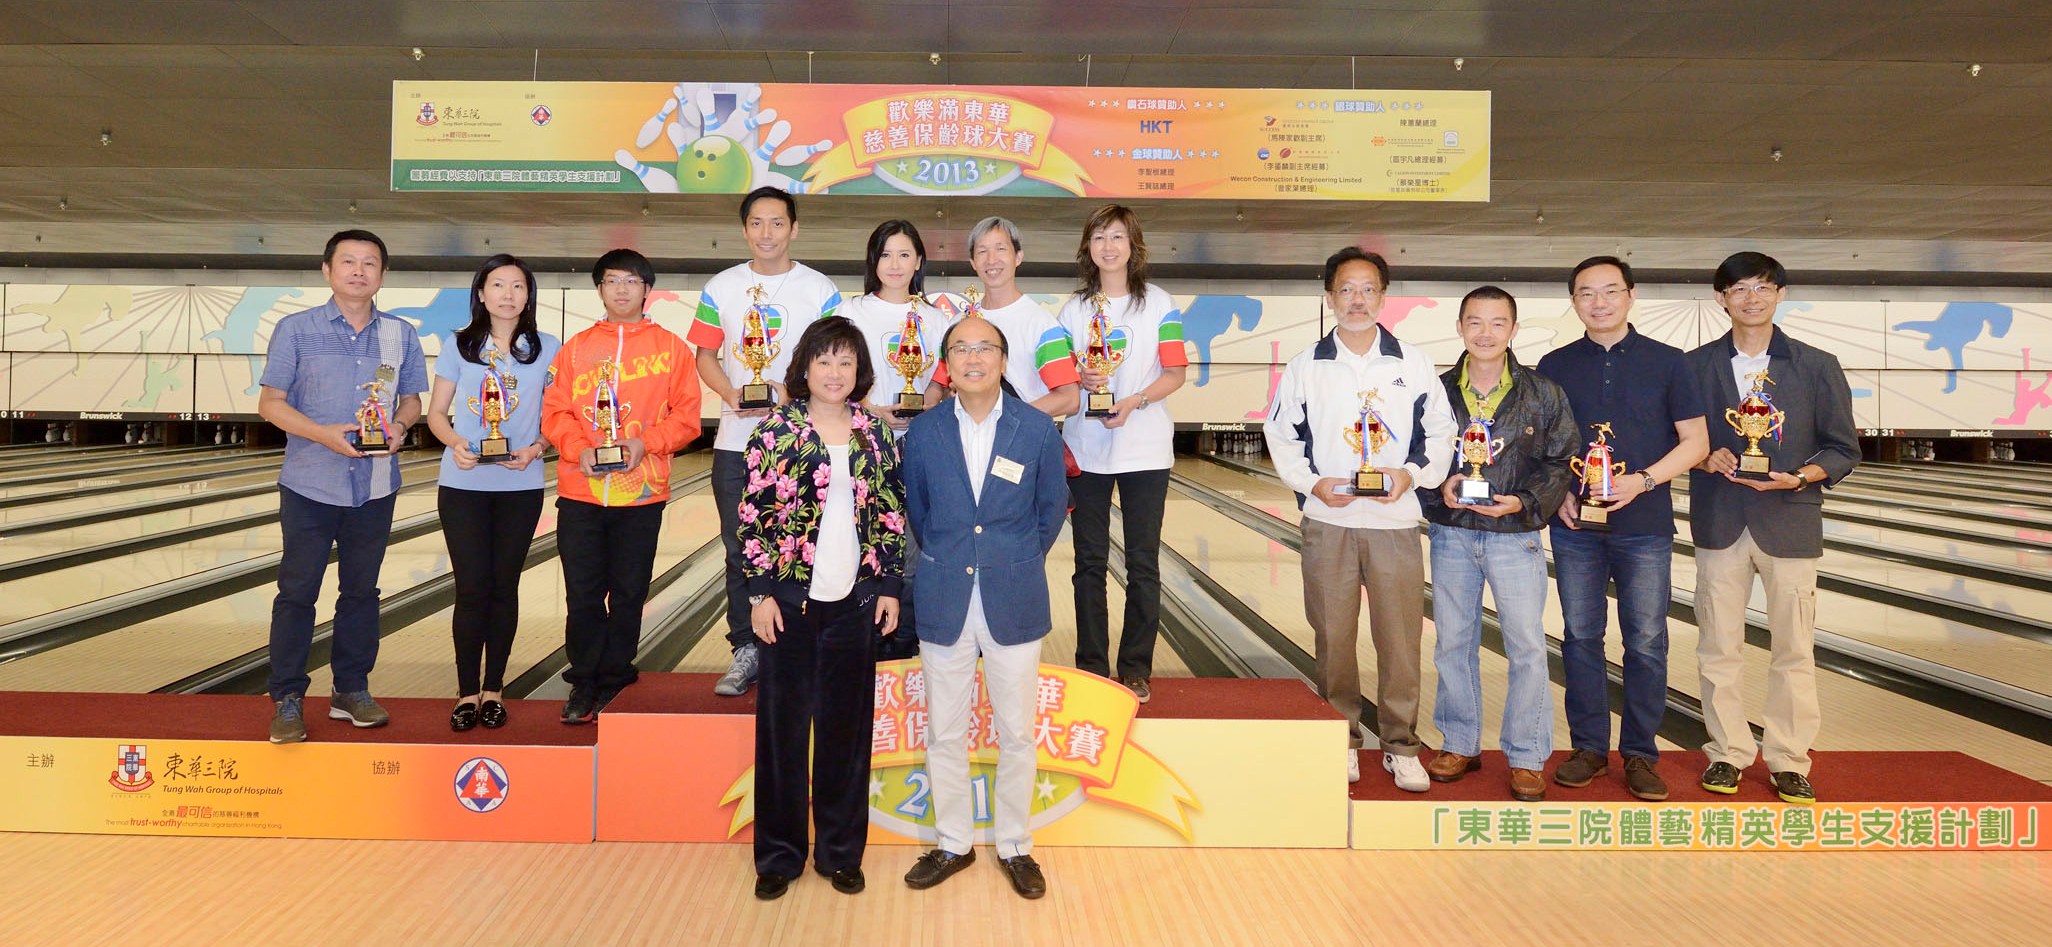 東華三院主席陳婉珍博士(前排左)及南華體育會黃鎮南太平坤士(前排右)頒獎予慈善名人盃的得獎隊伍。